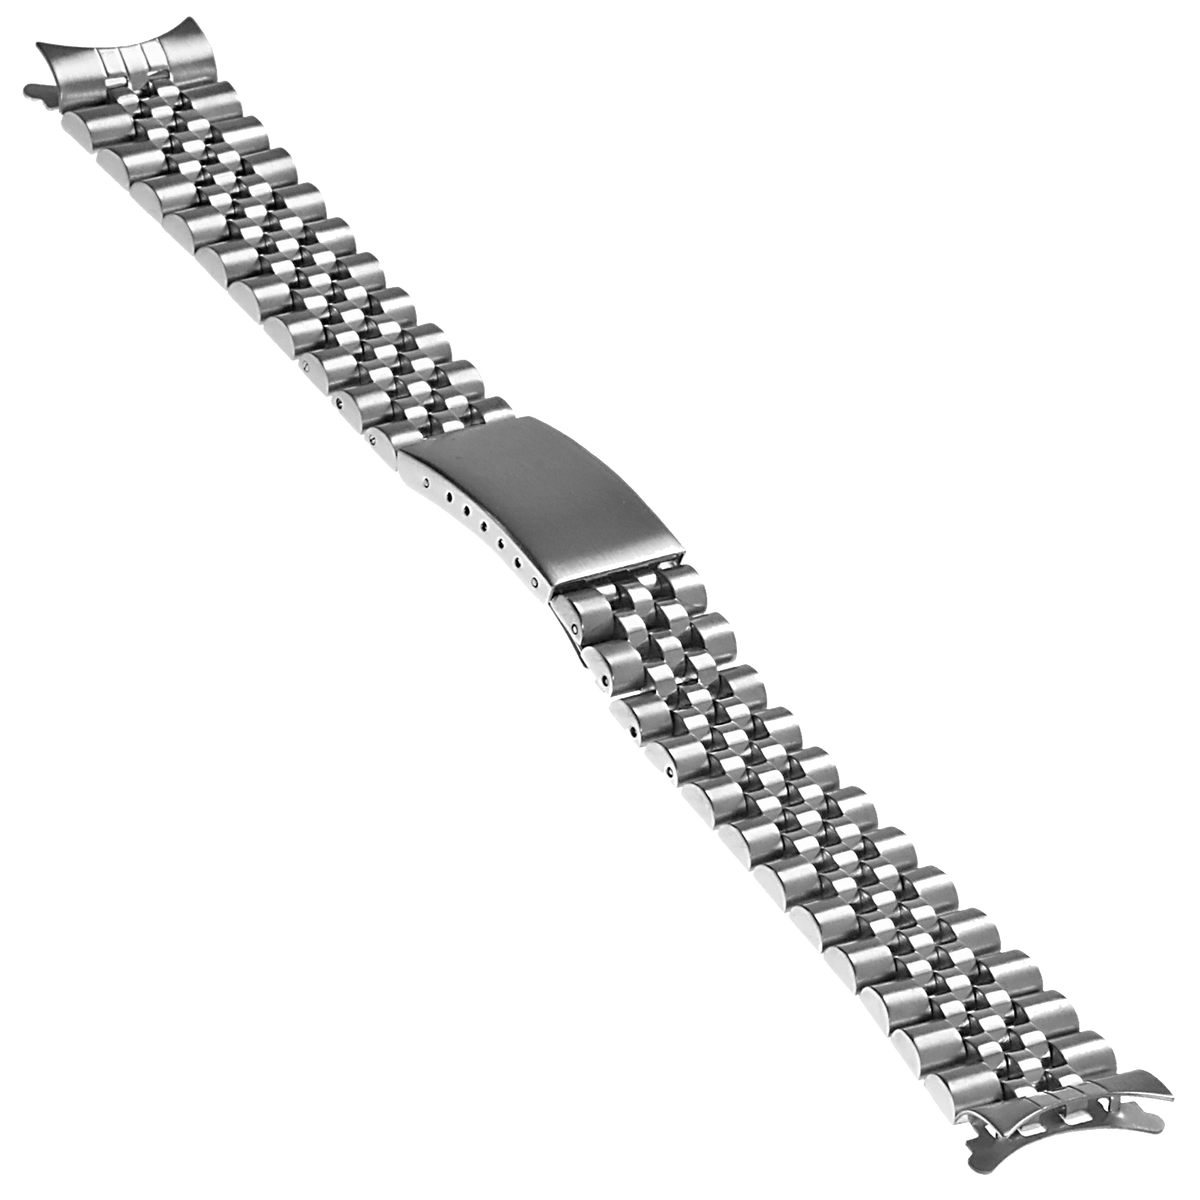 STRAPSCO - Stainless Steel Jubilee Bracelet